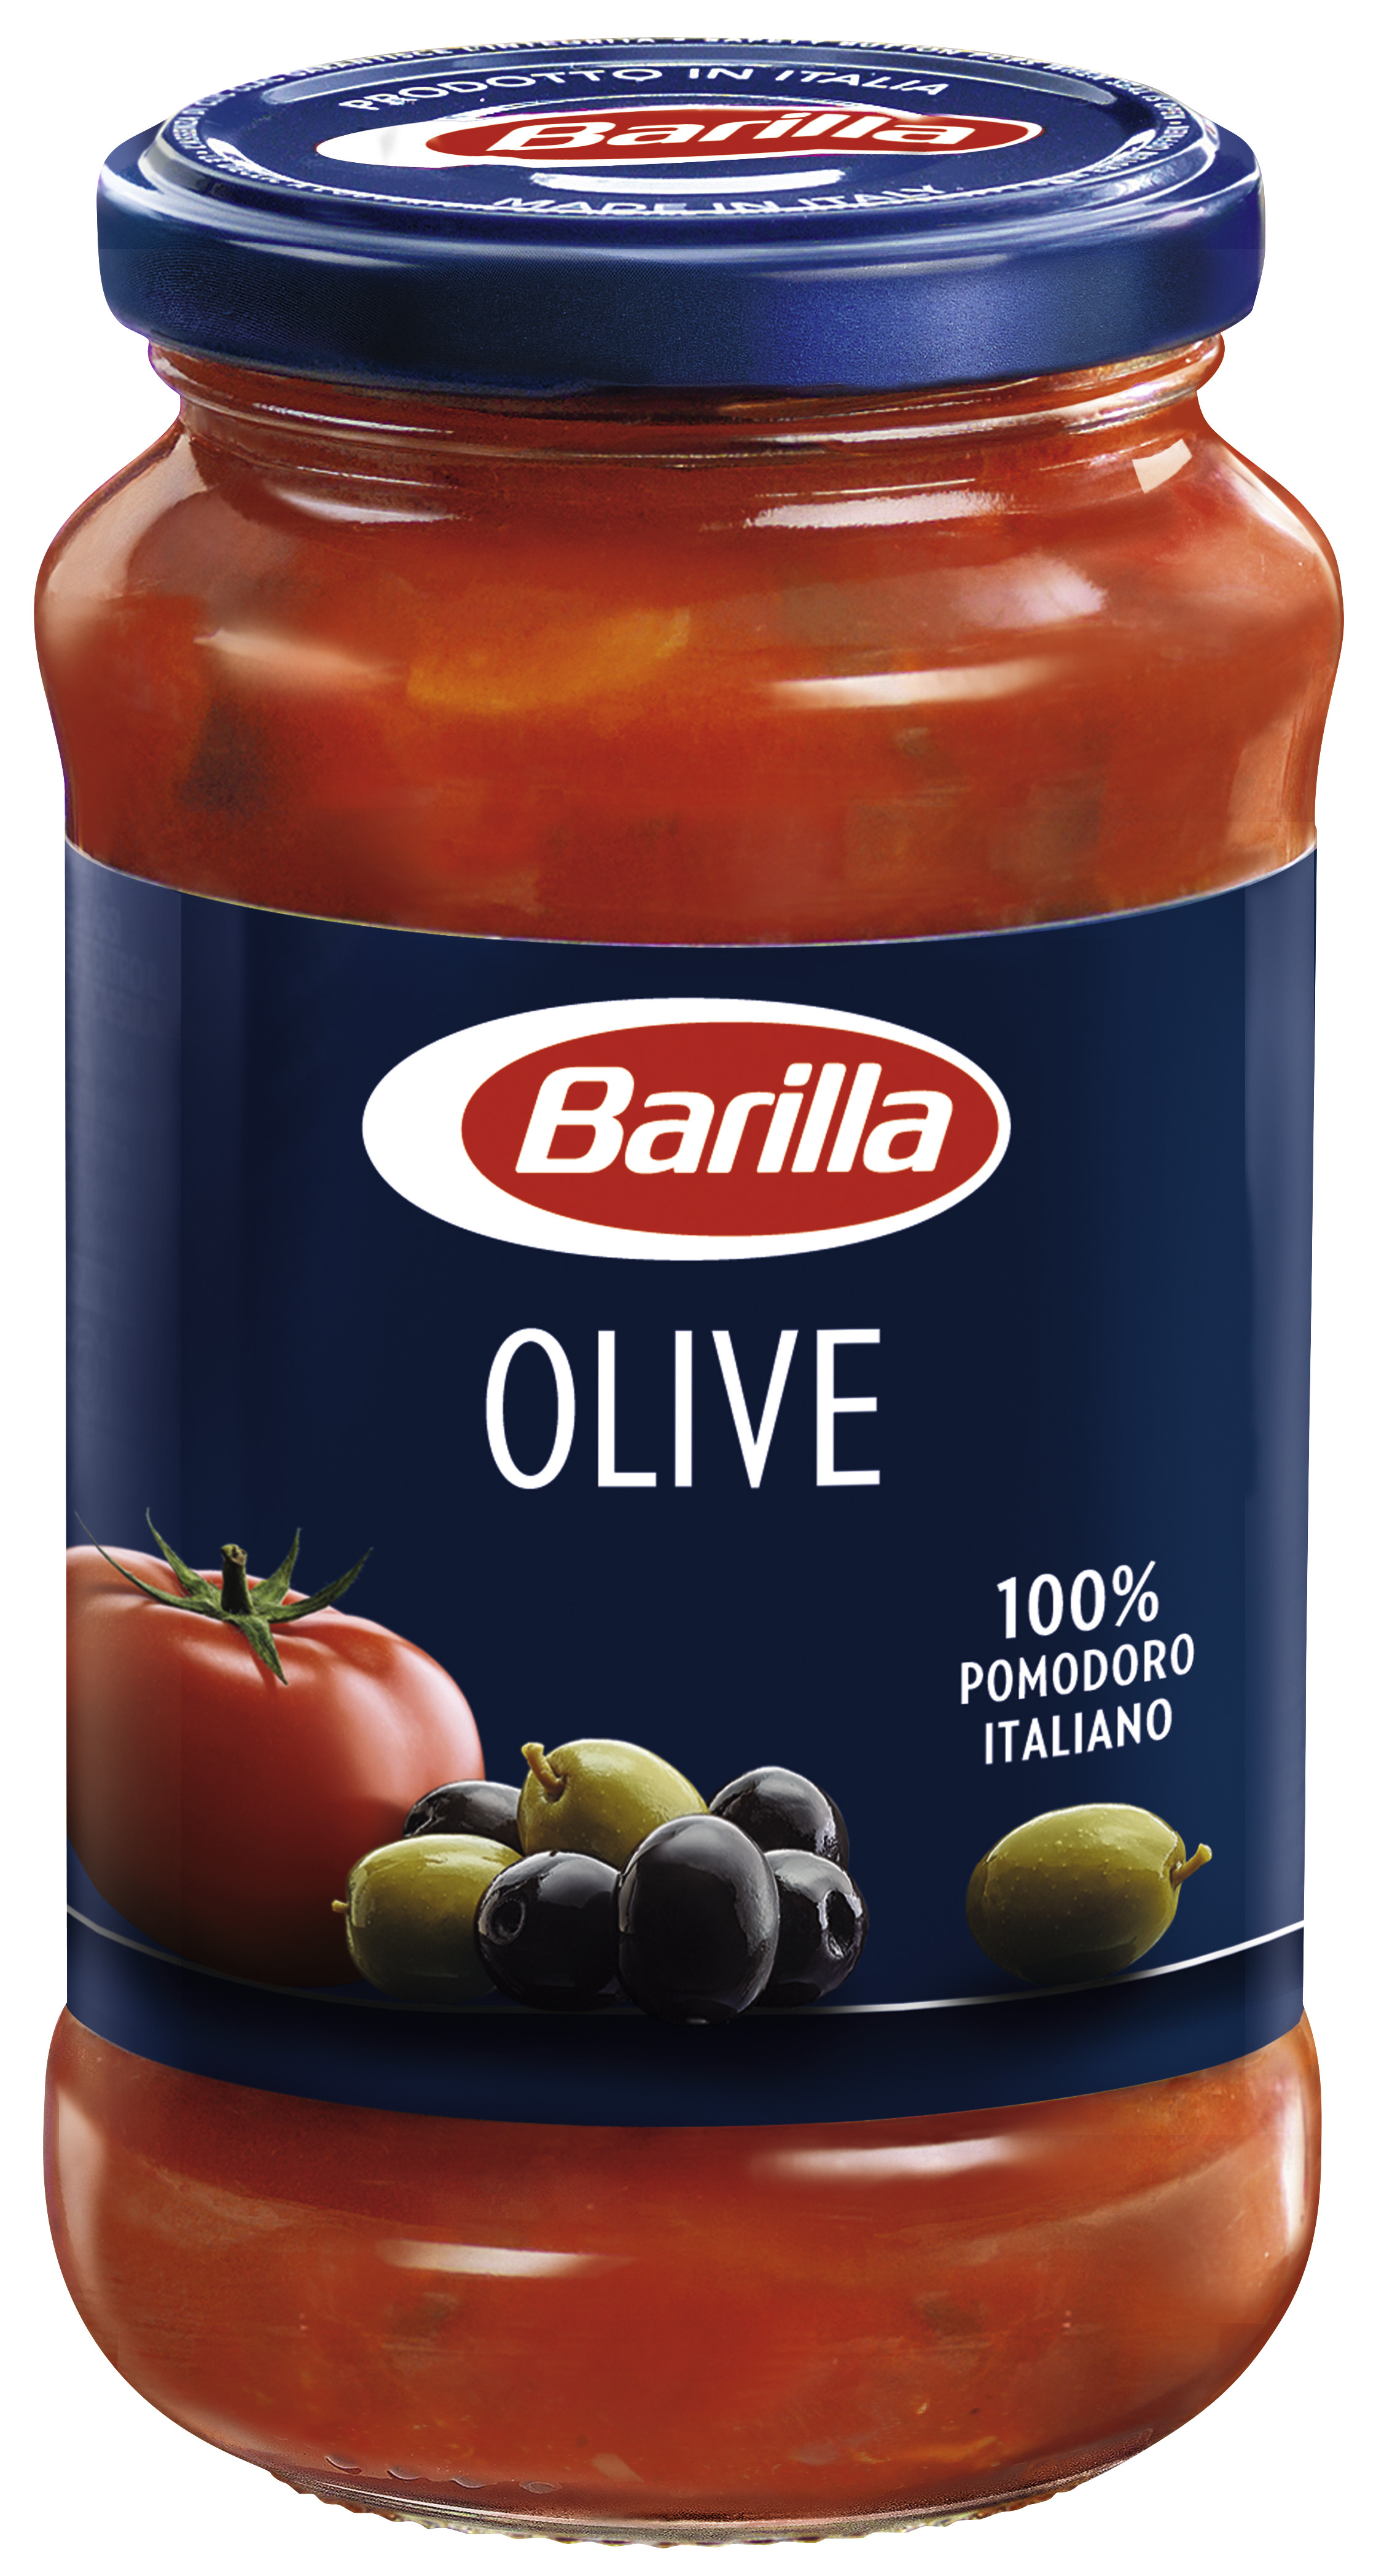 Barilla Pastasauce Olive - TOMATENSAUCE MIT GRÜNEN UND SCHWARZEN OLIVEN 400g